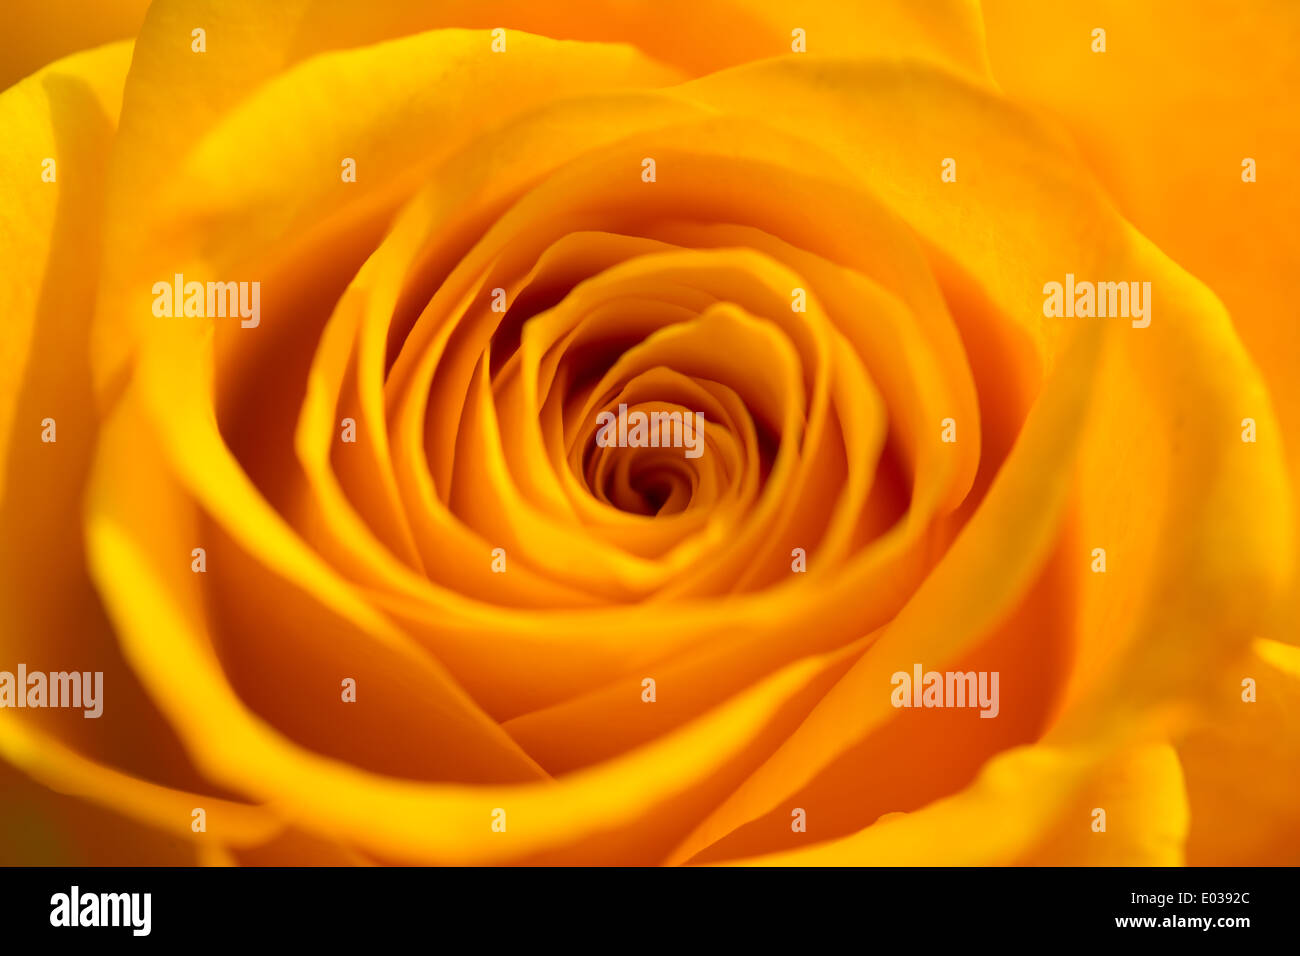 Detail of an orange rose. Stock Photo